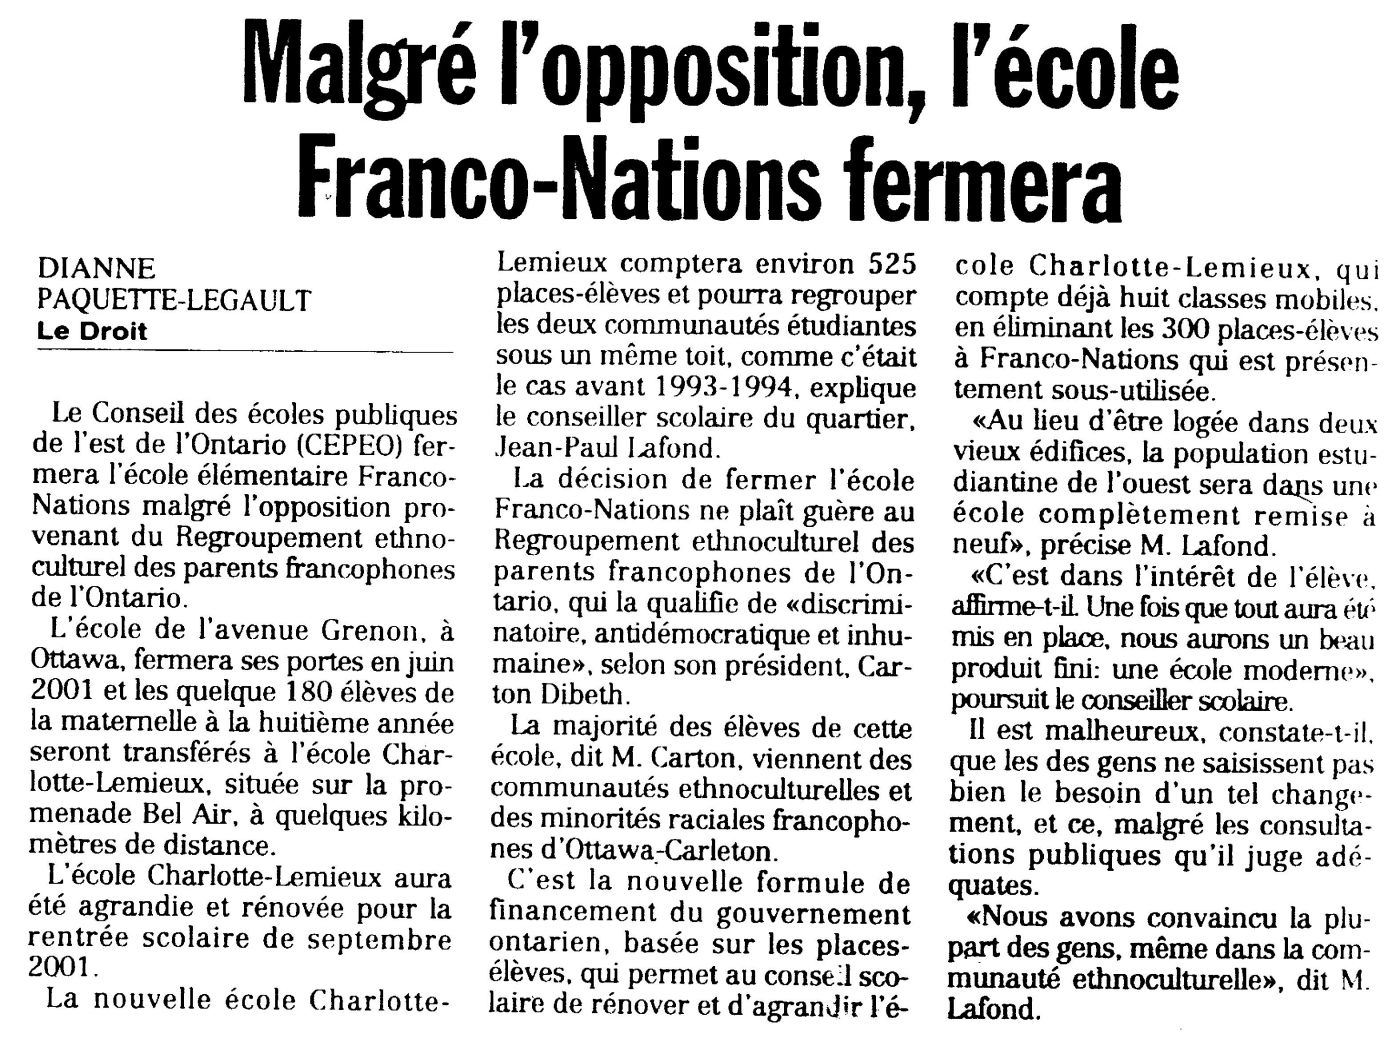 Article de journal imprimé, en français. Le titre apparaît en gras, en haut de la page. L’article est monté sur trois colonnes et il est signé.